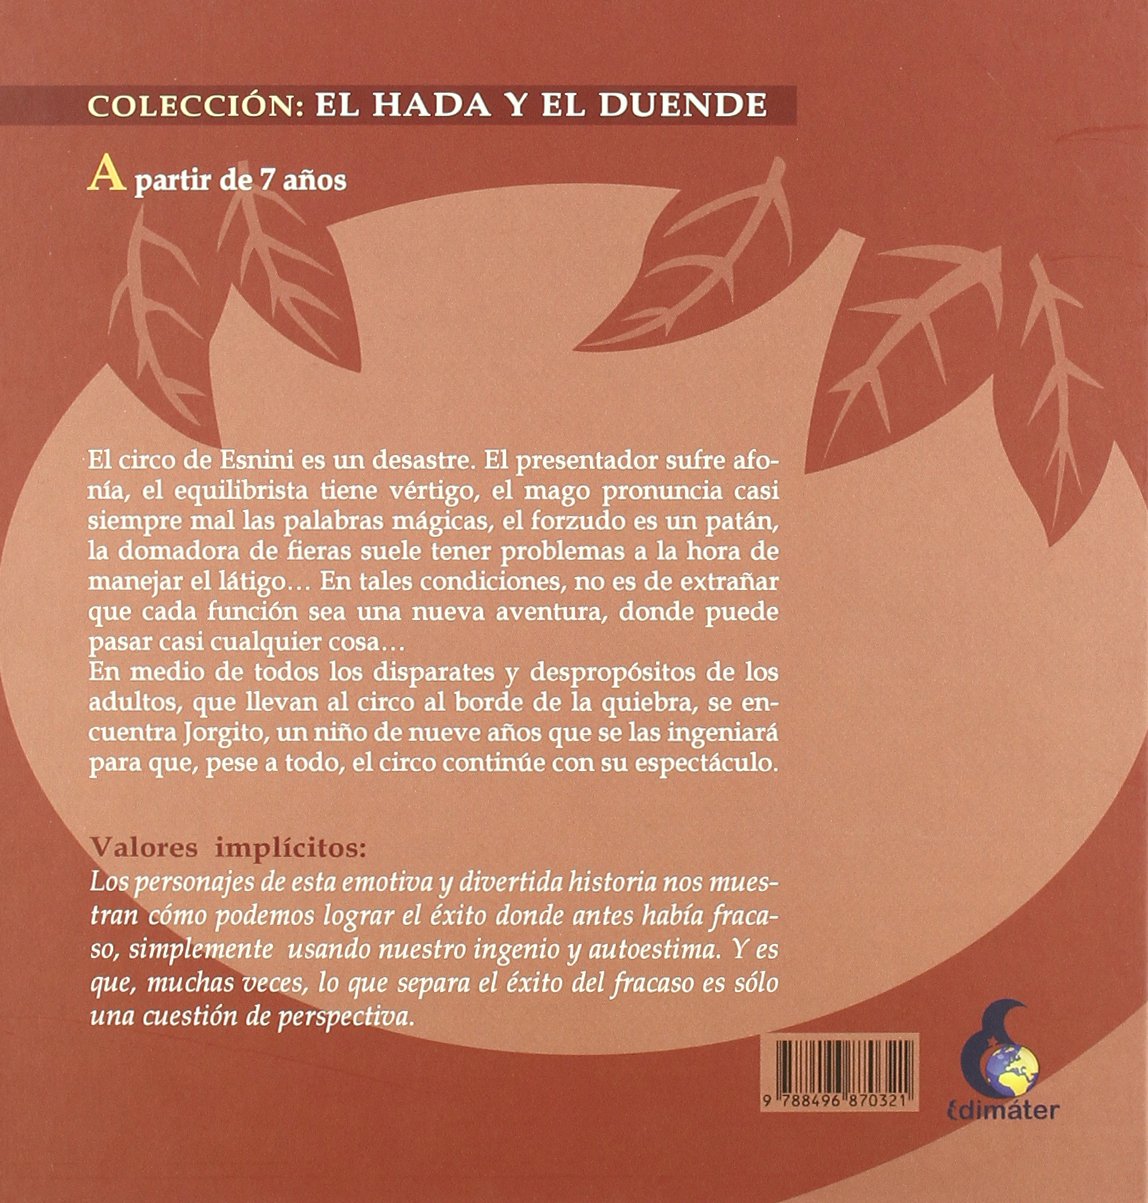 Este circo es un desastre (El Hada y el Duende) (Spanish Edition)